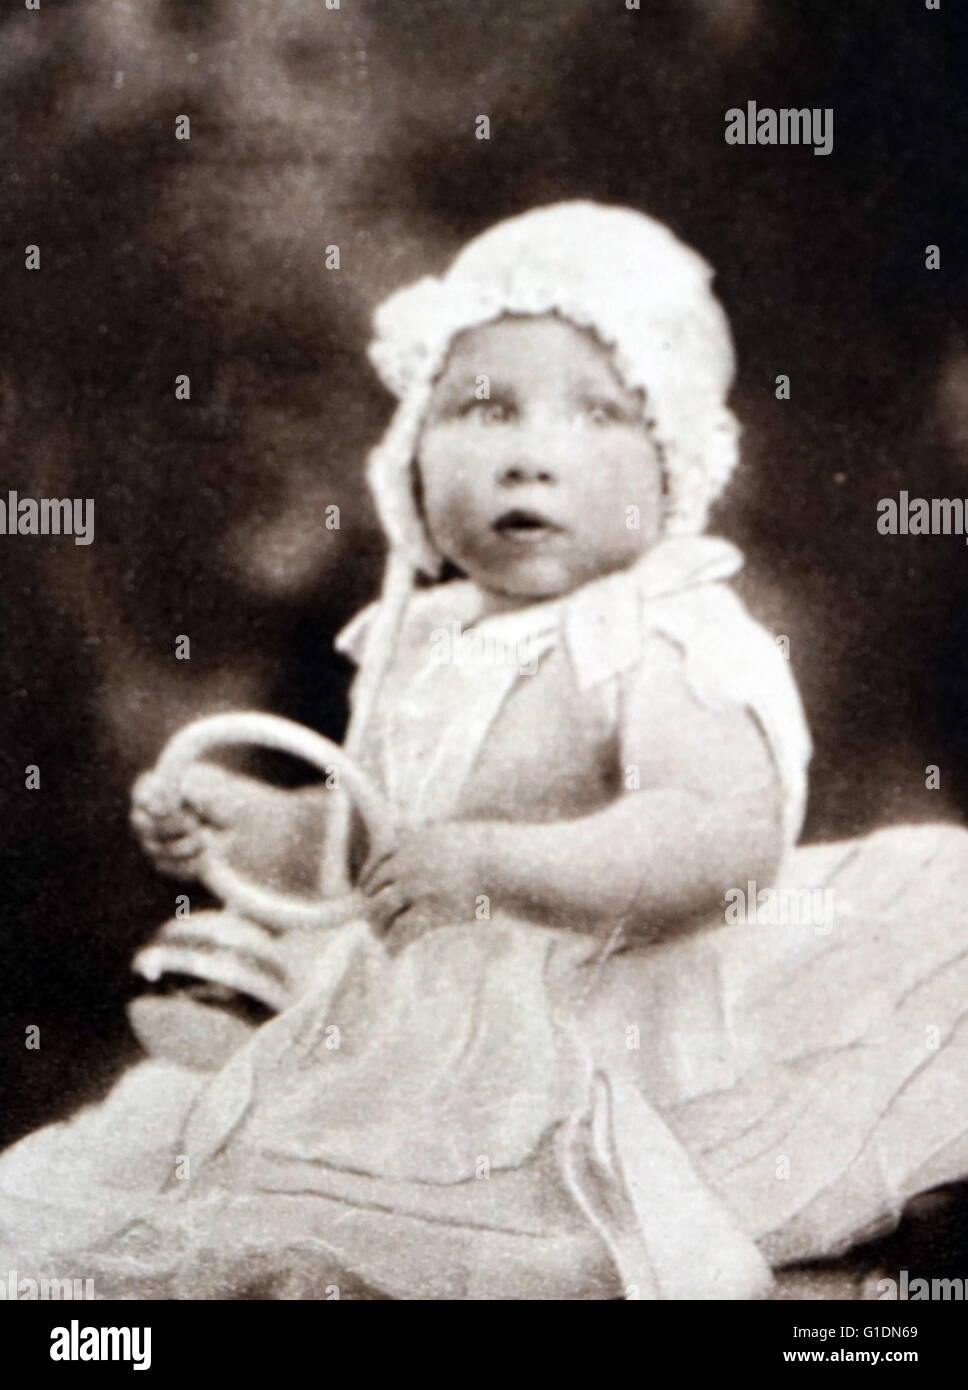 Fotografía del bebé de la Princesa Margarita, Condesa de Snowdon (1930-2002), la joven hija de rey George VI y la Reina Elizabeth, y la única hermana de la Reina Isabel II. Fecha Siglo XX Foto de stock